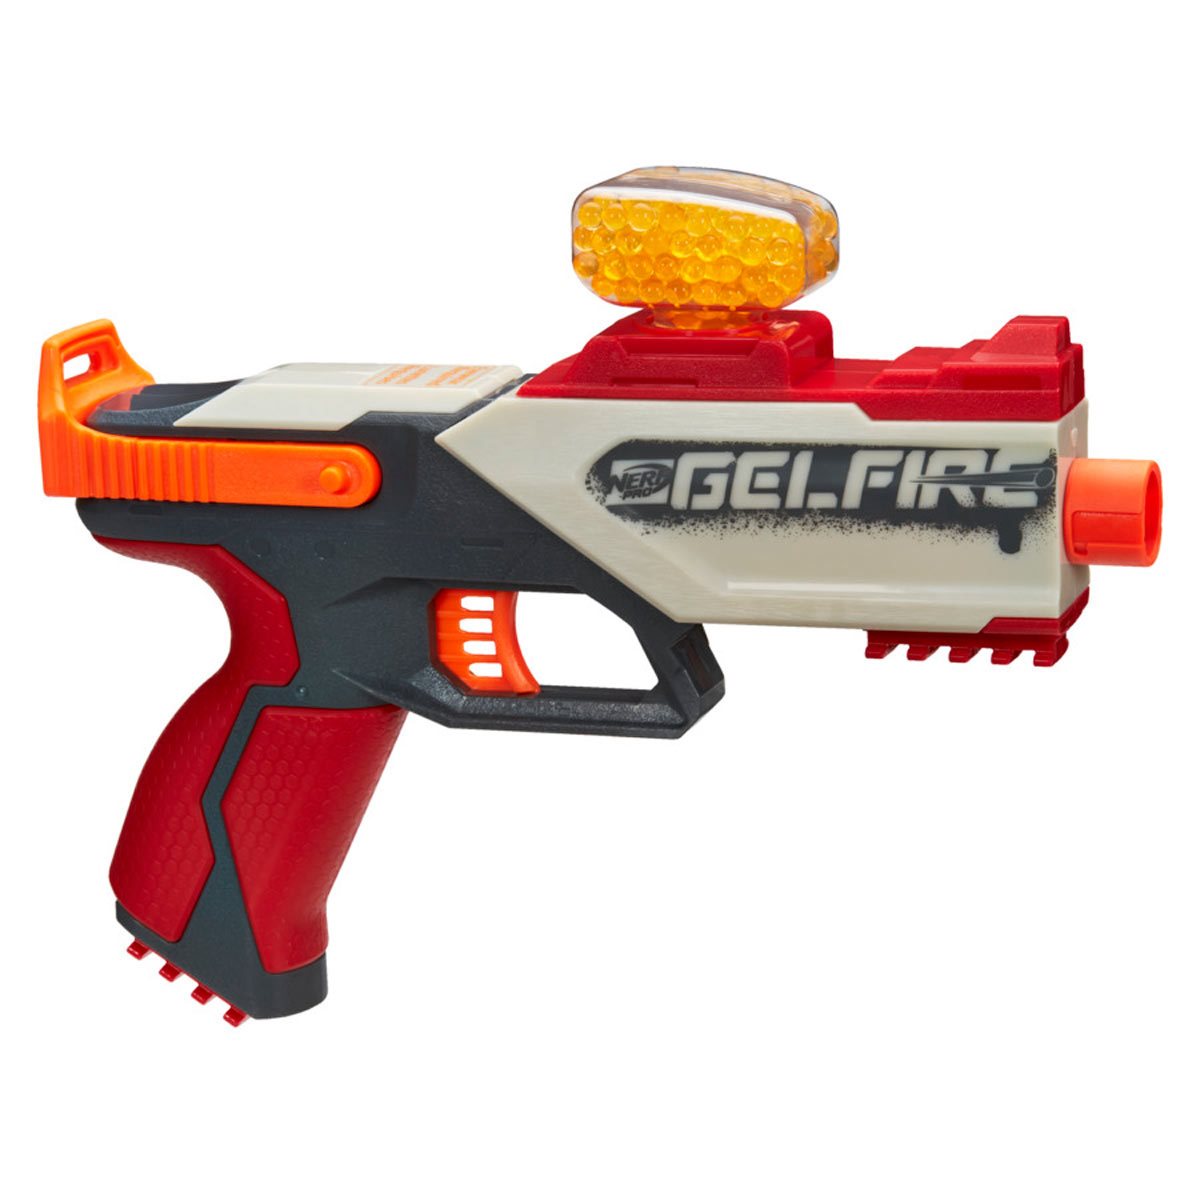 bestrating had het niet door markt Nerf Pro Gelfire Legion Spring Action Blaster